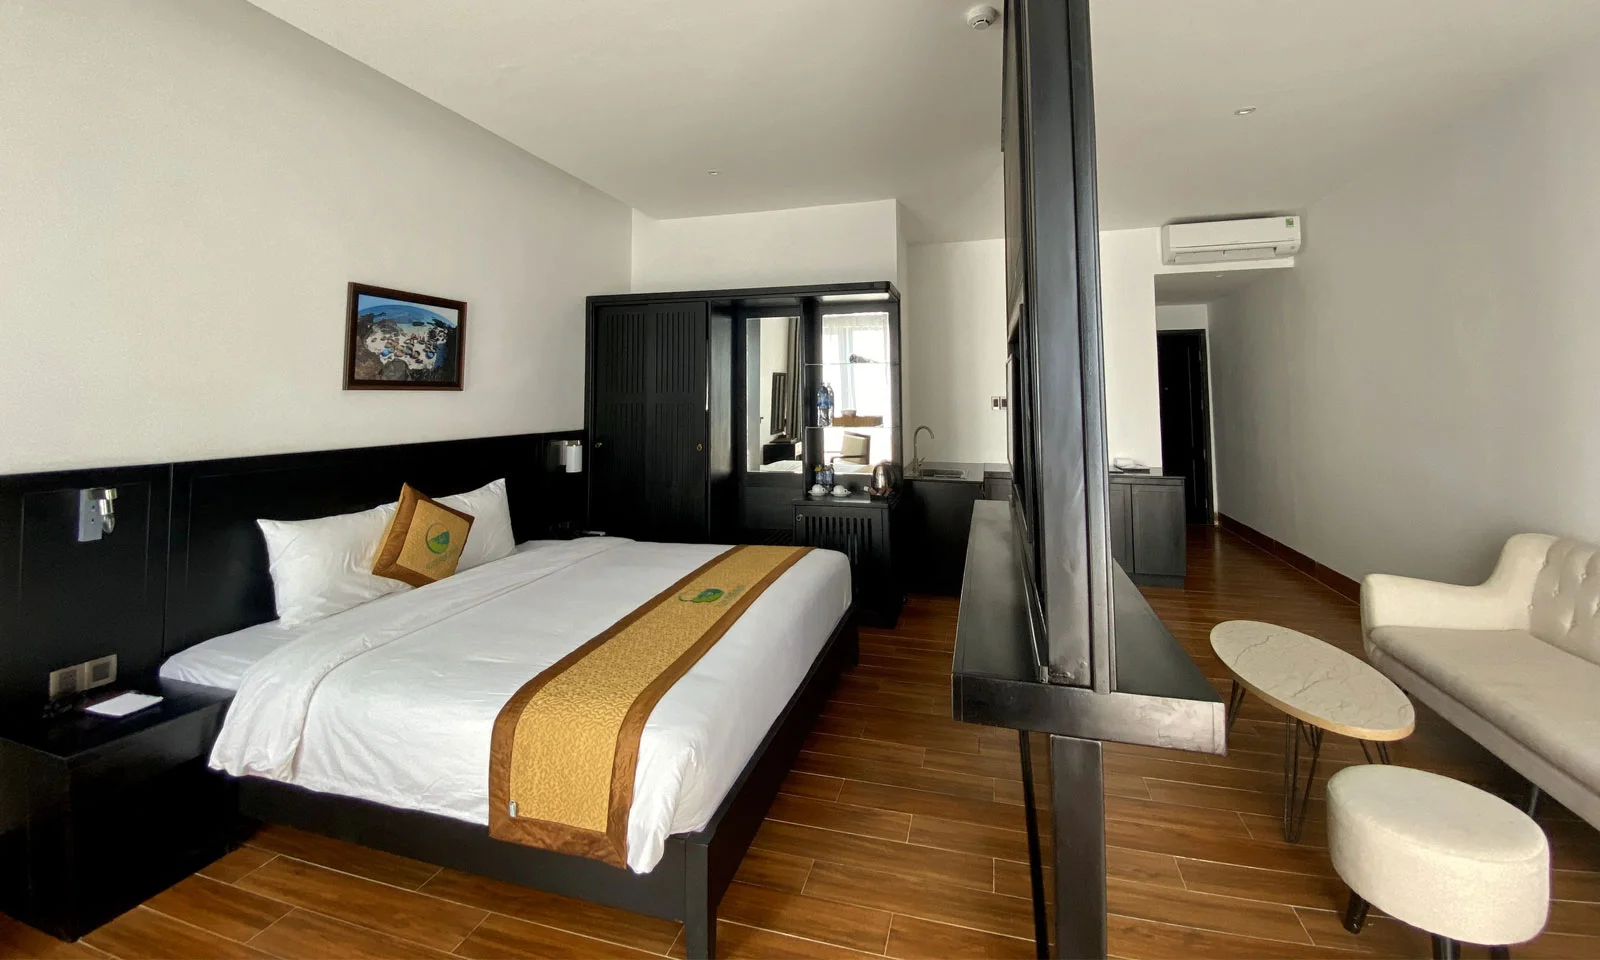 Khách sạn Đảo Ngọc Lý Sơn - Pearl Island Hotel & Resort Quảng Ngãi